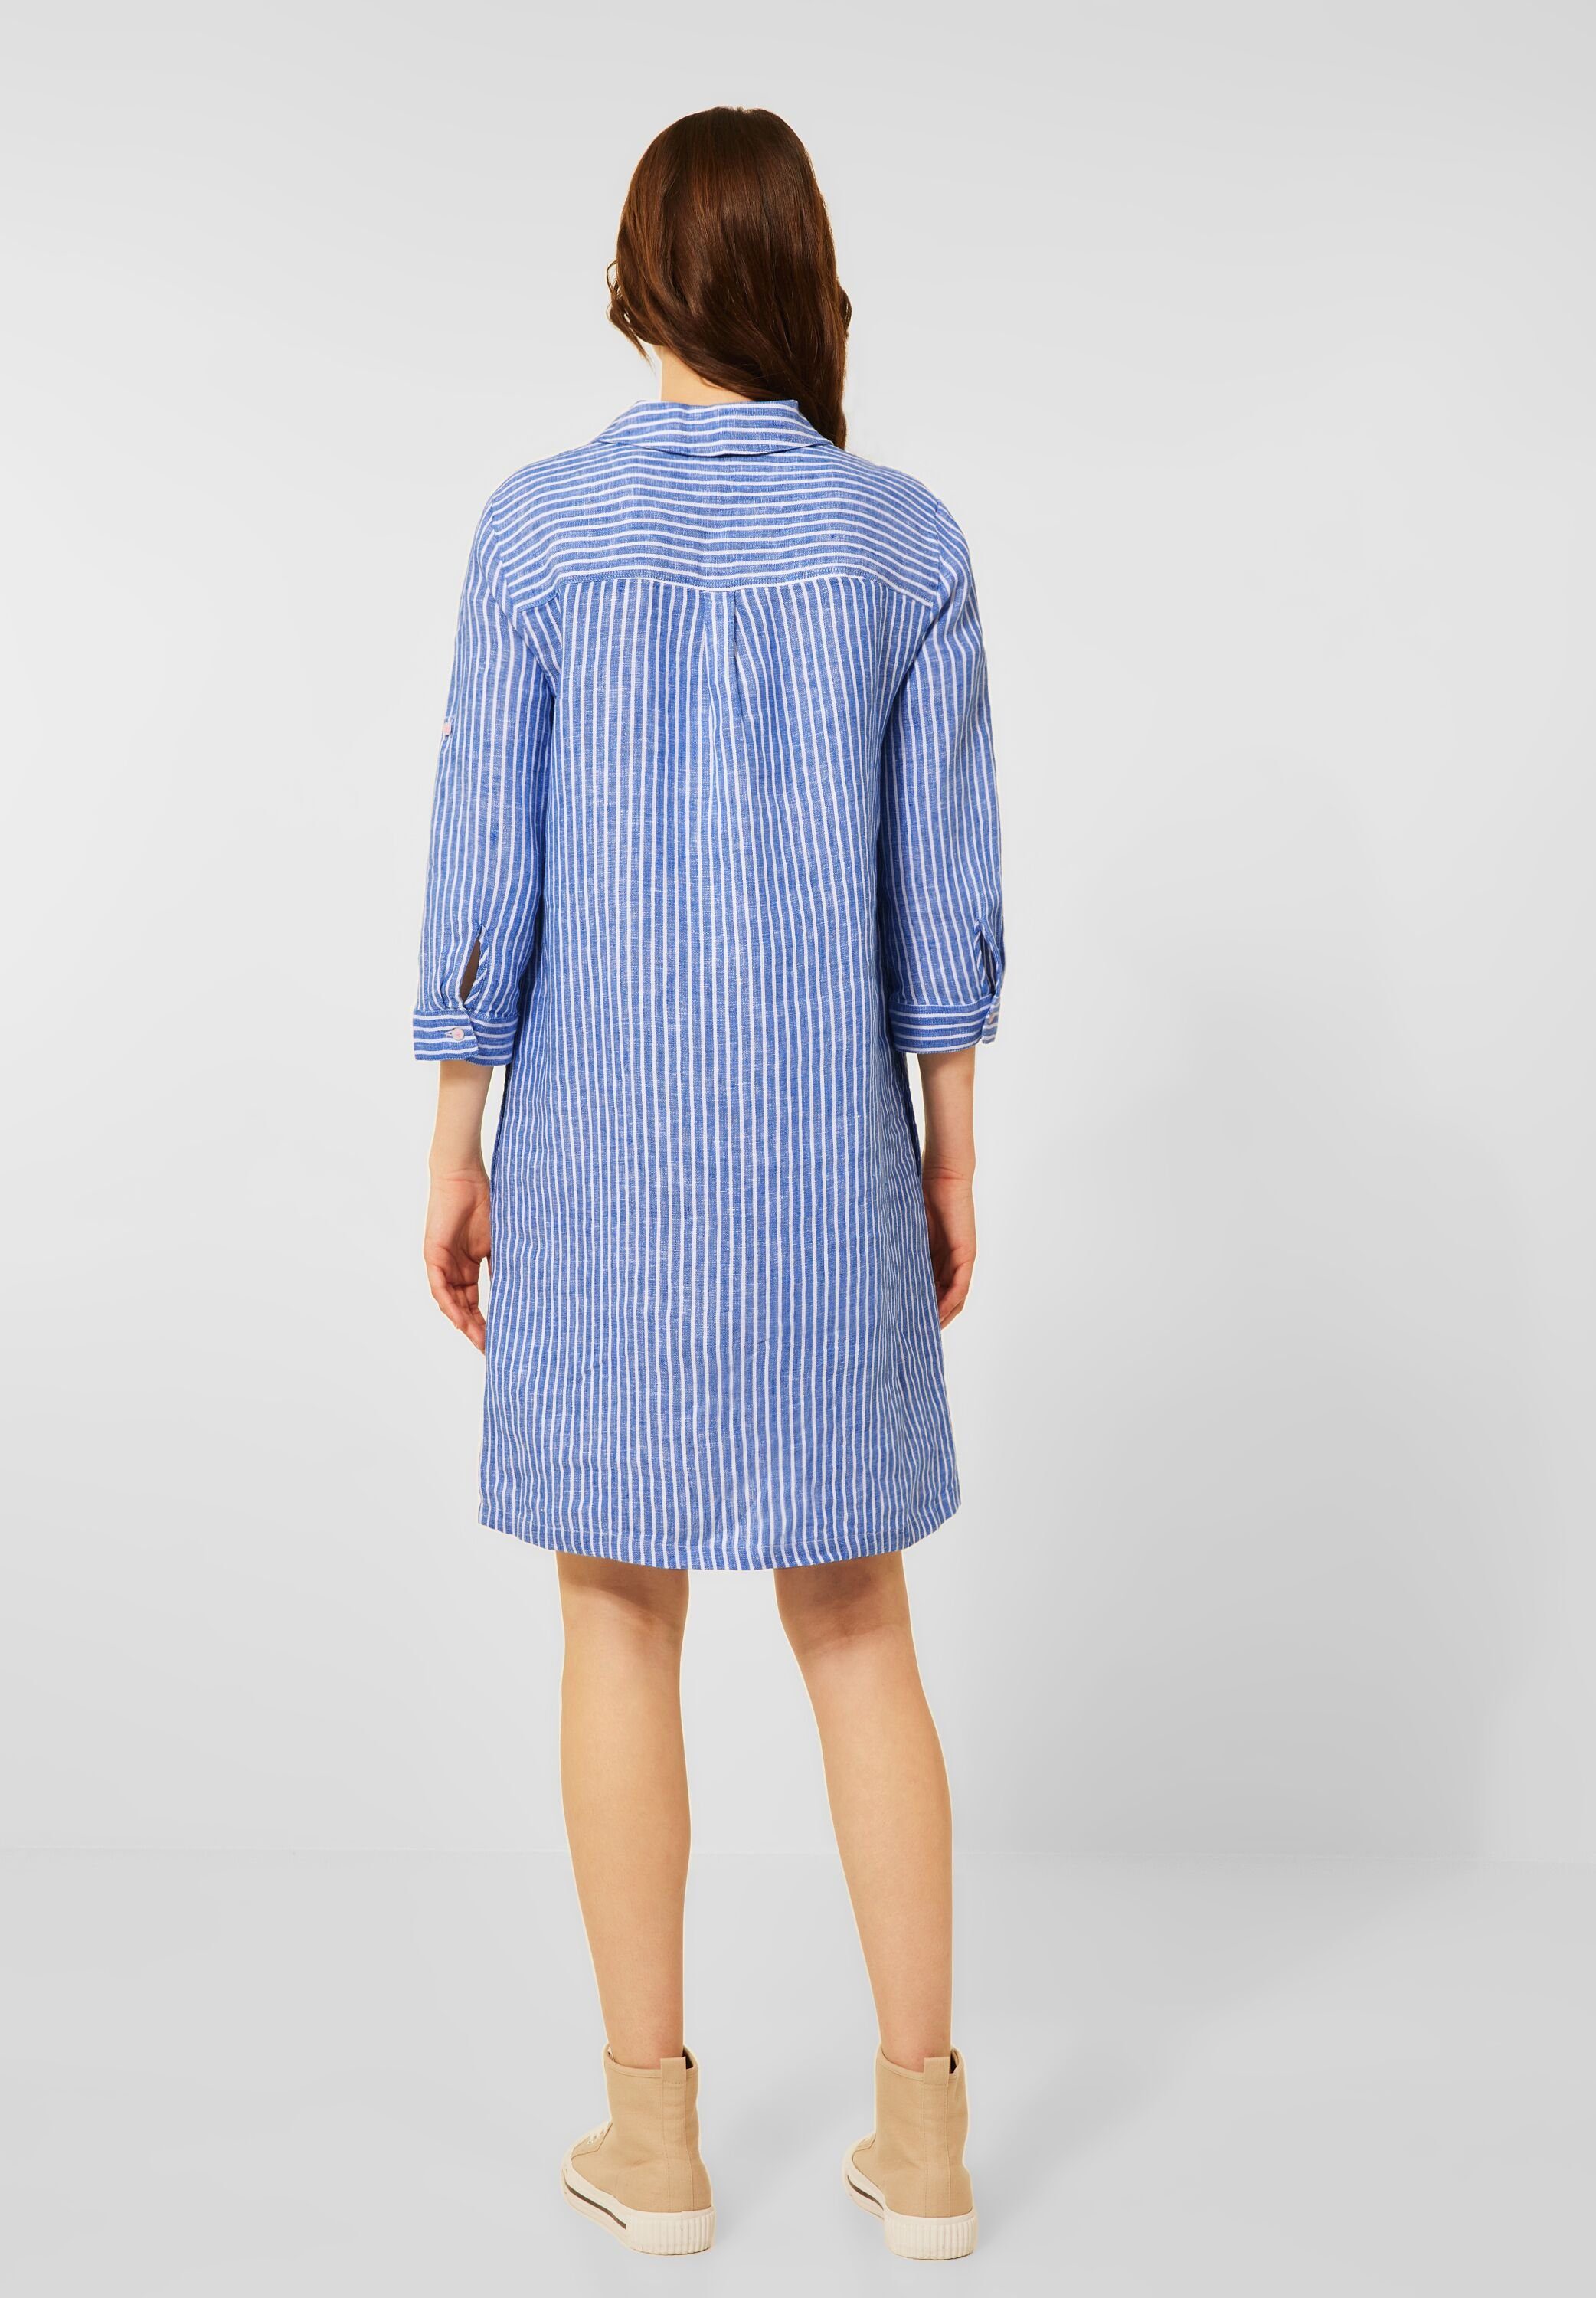 Cecil Blusenkleid mit Streifen Muster online kaufen | OTTO